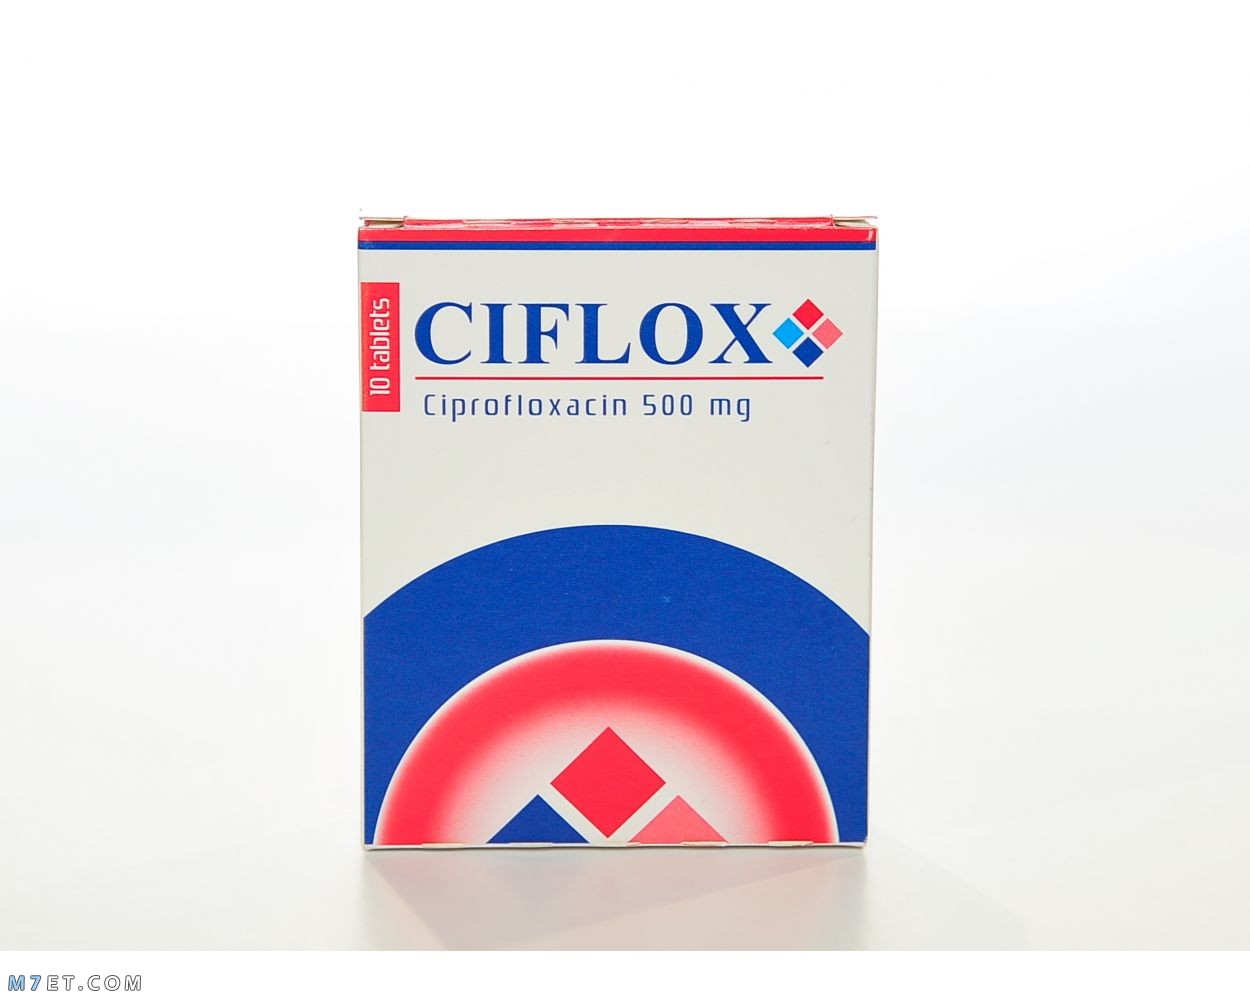 دواء سيفلوكس Ciflox